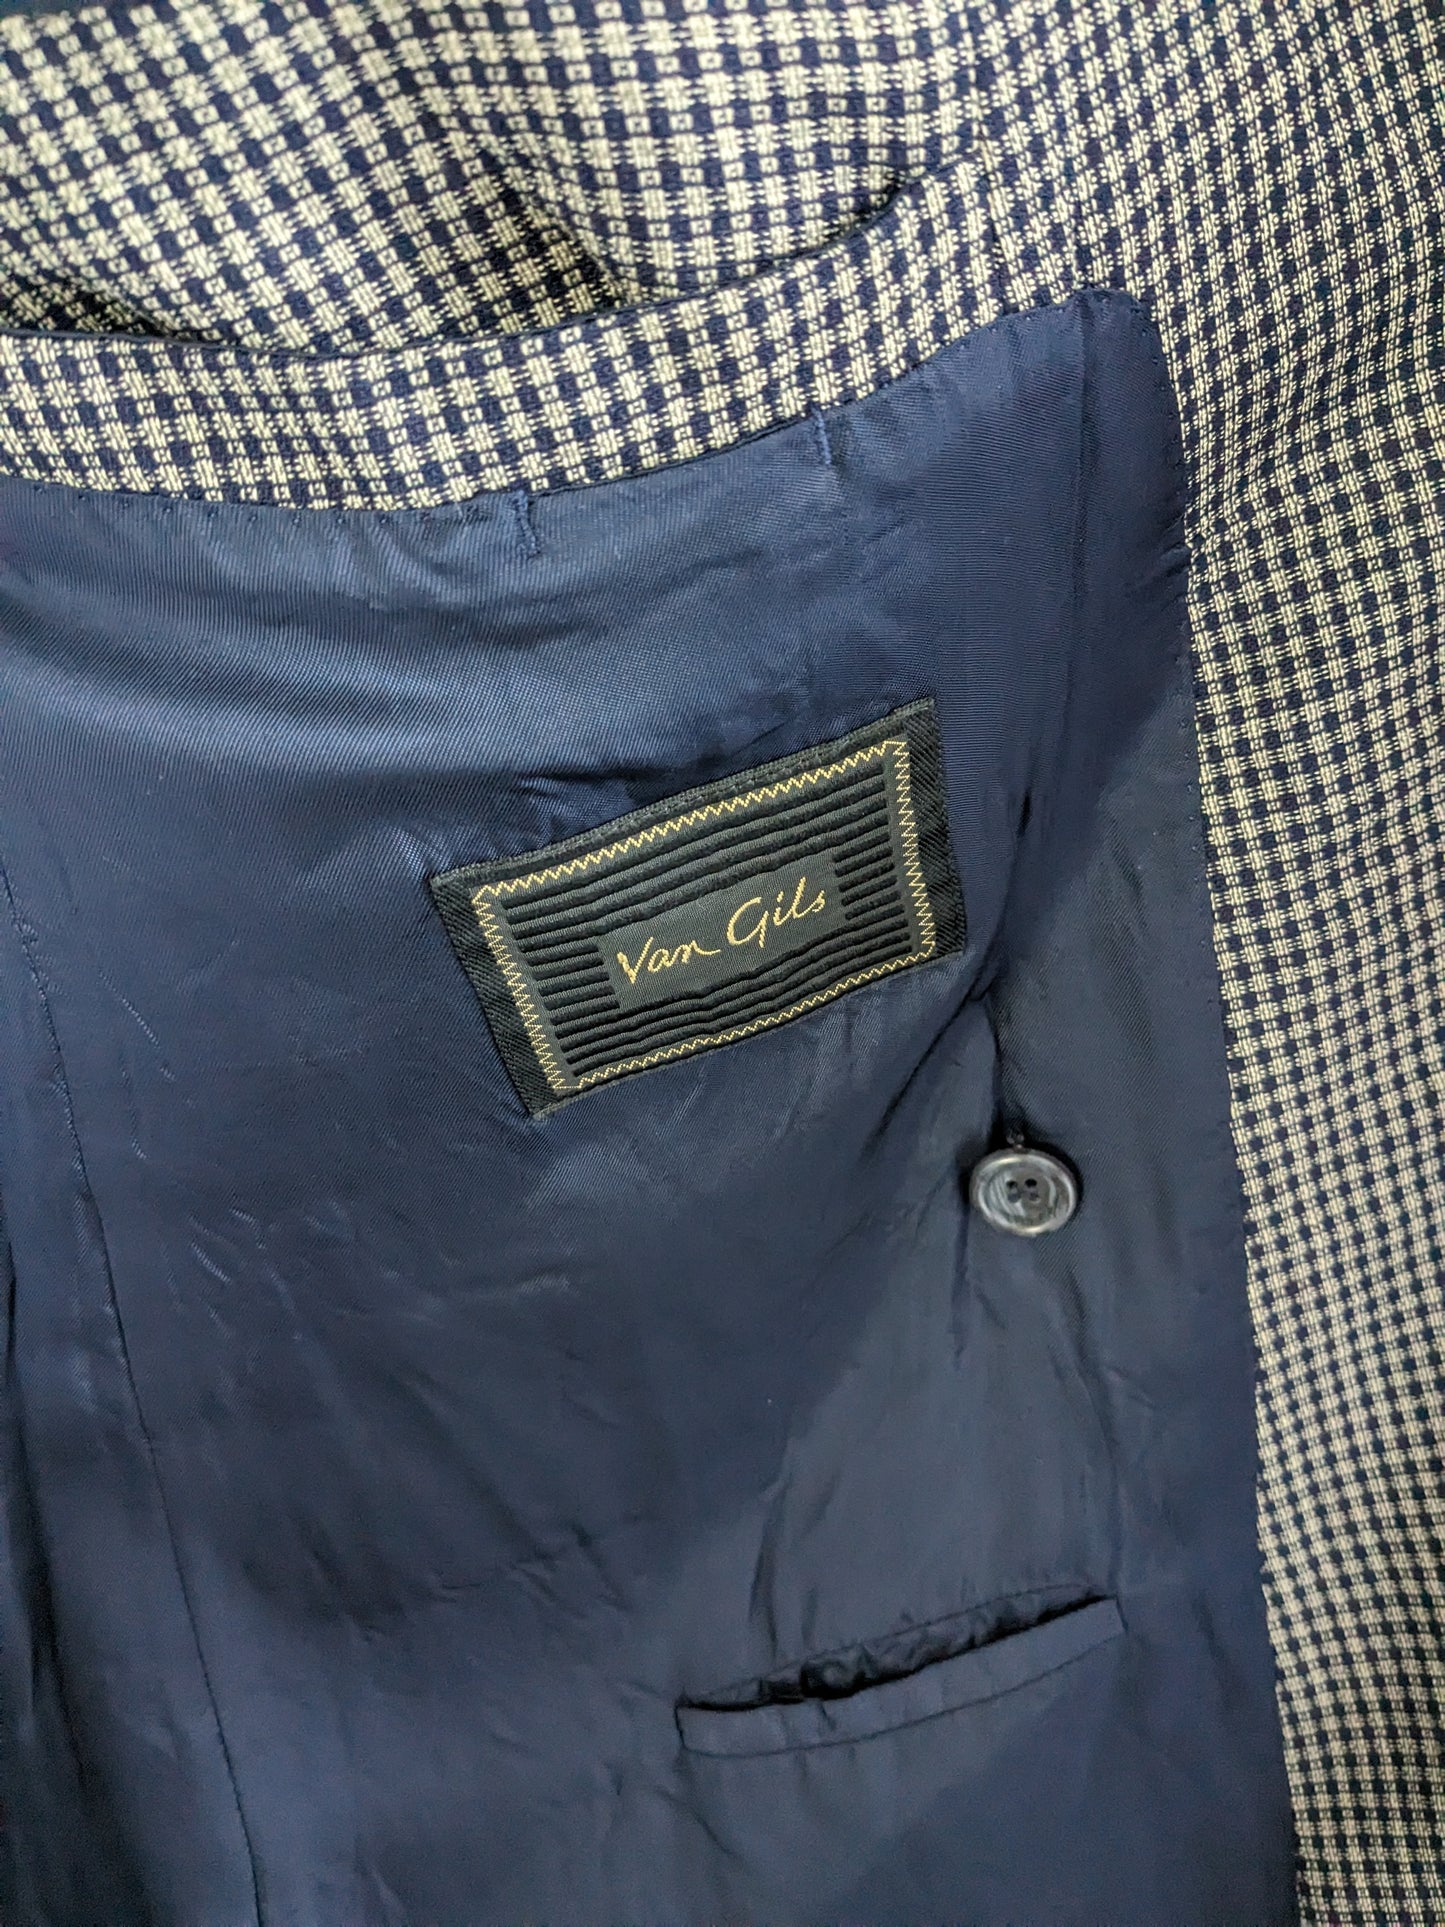 Van Gils Giacca di lana a doppio petto vintage con inverni punti. Grigio blu controllato. Taglia 54 / L.